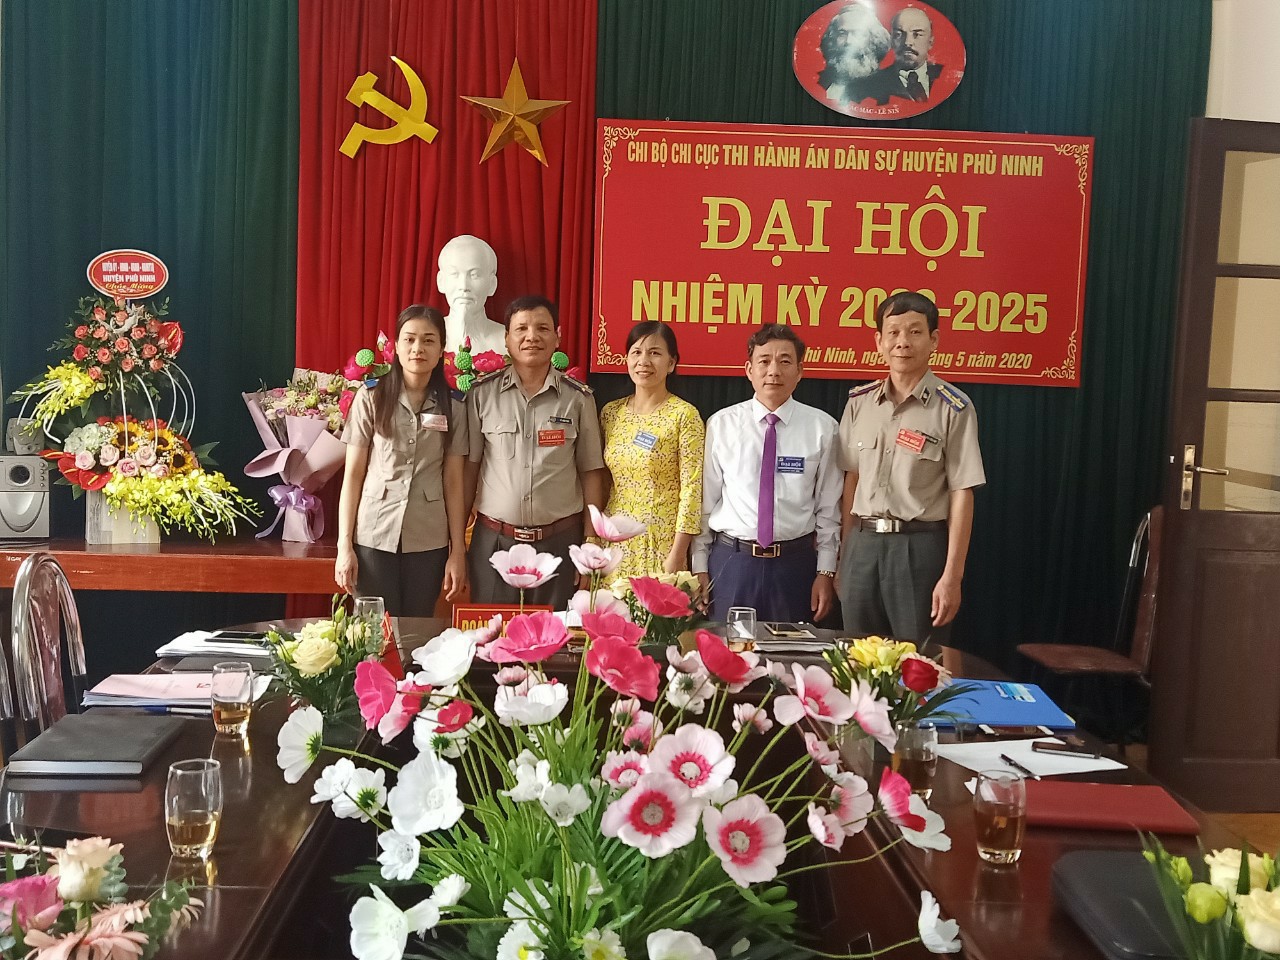 Chi bộ Chi cục thi hành án dân sự huyện Phù Ninh  tổ chức thành công Đại hội nhiệm kỳ 2020-2025